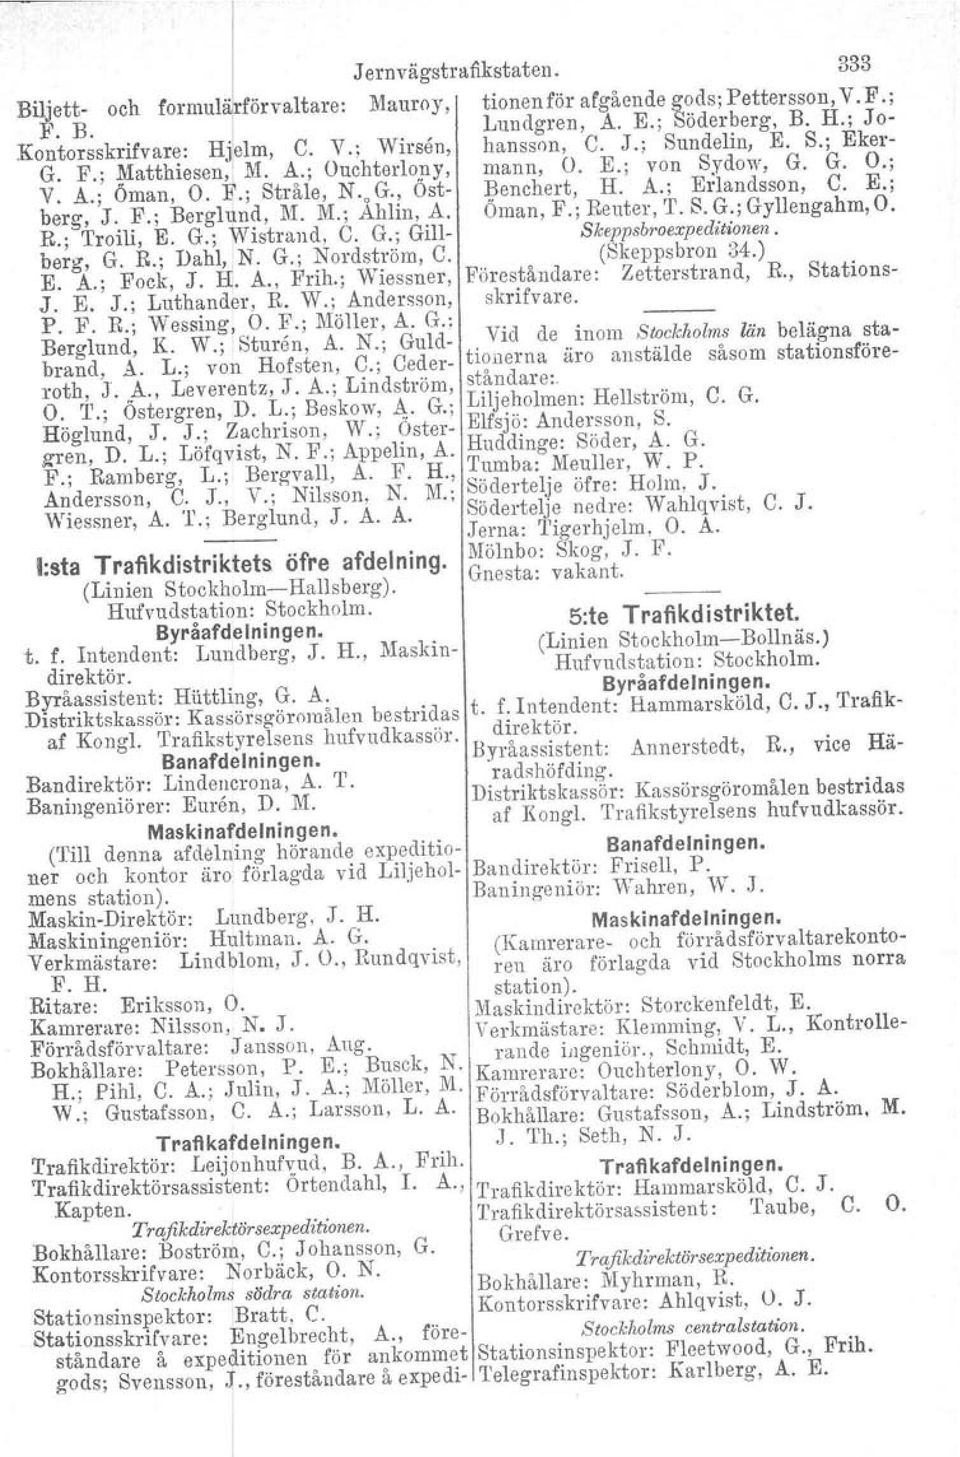 n~, M. M.;, Ahlin,.A. Oman, F.; Reuter, T. S. G.; Gyllengahm, O. R.; 1'1'0111,E. G.; W1strand, C. G.; om- Skeppsbroexpeditionen. berg, G. R.; Dahl, N. G.; Nordström, C. (Skeppsbron 84.) E. A.; Fock, J.